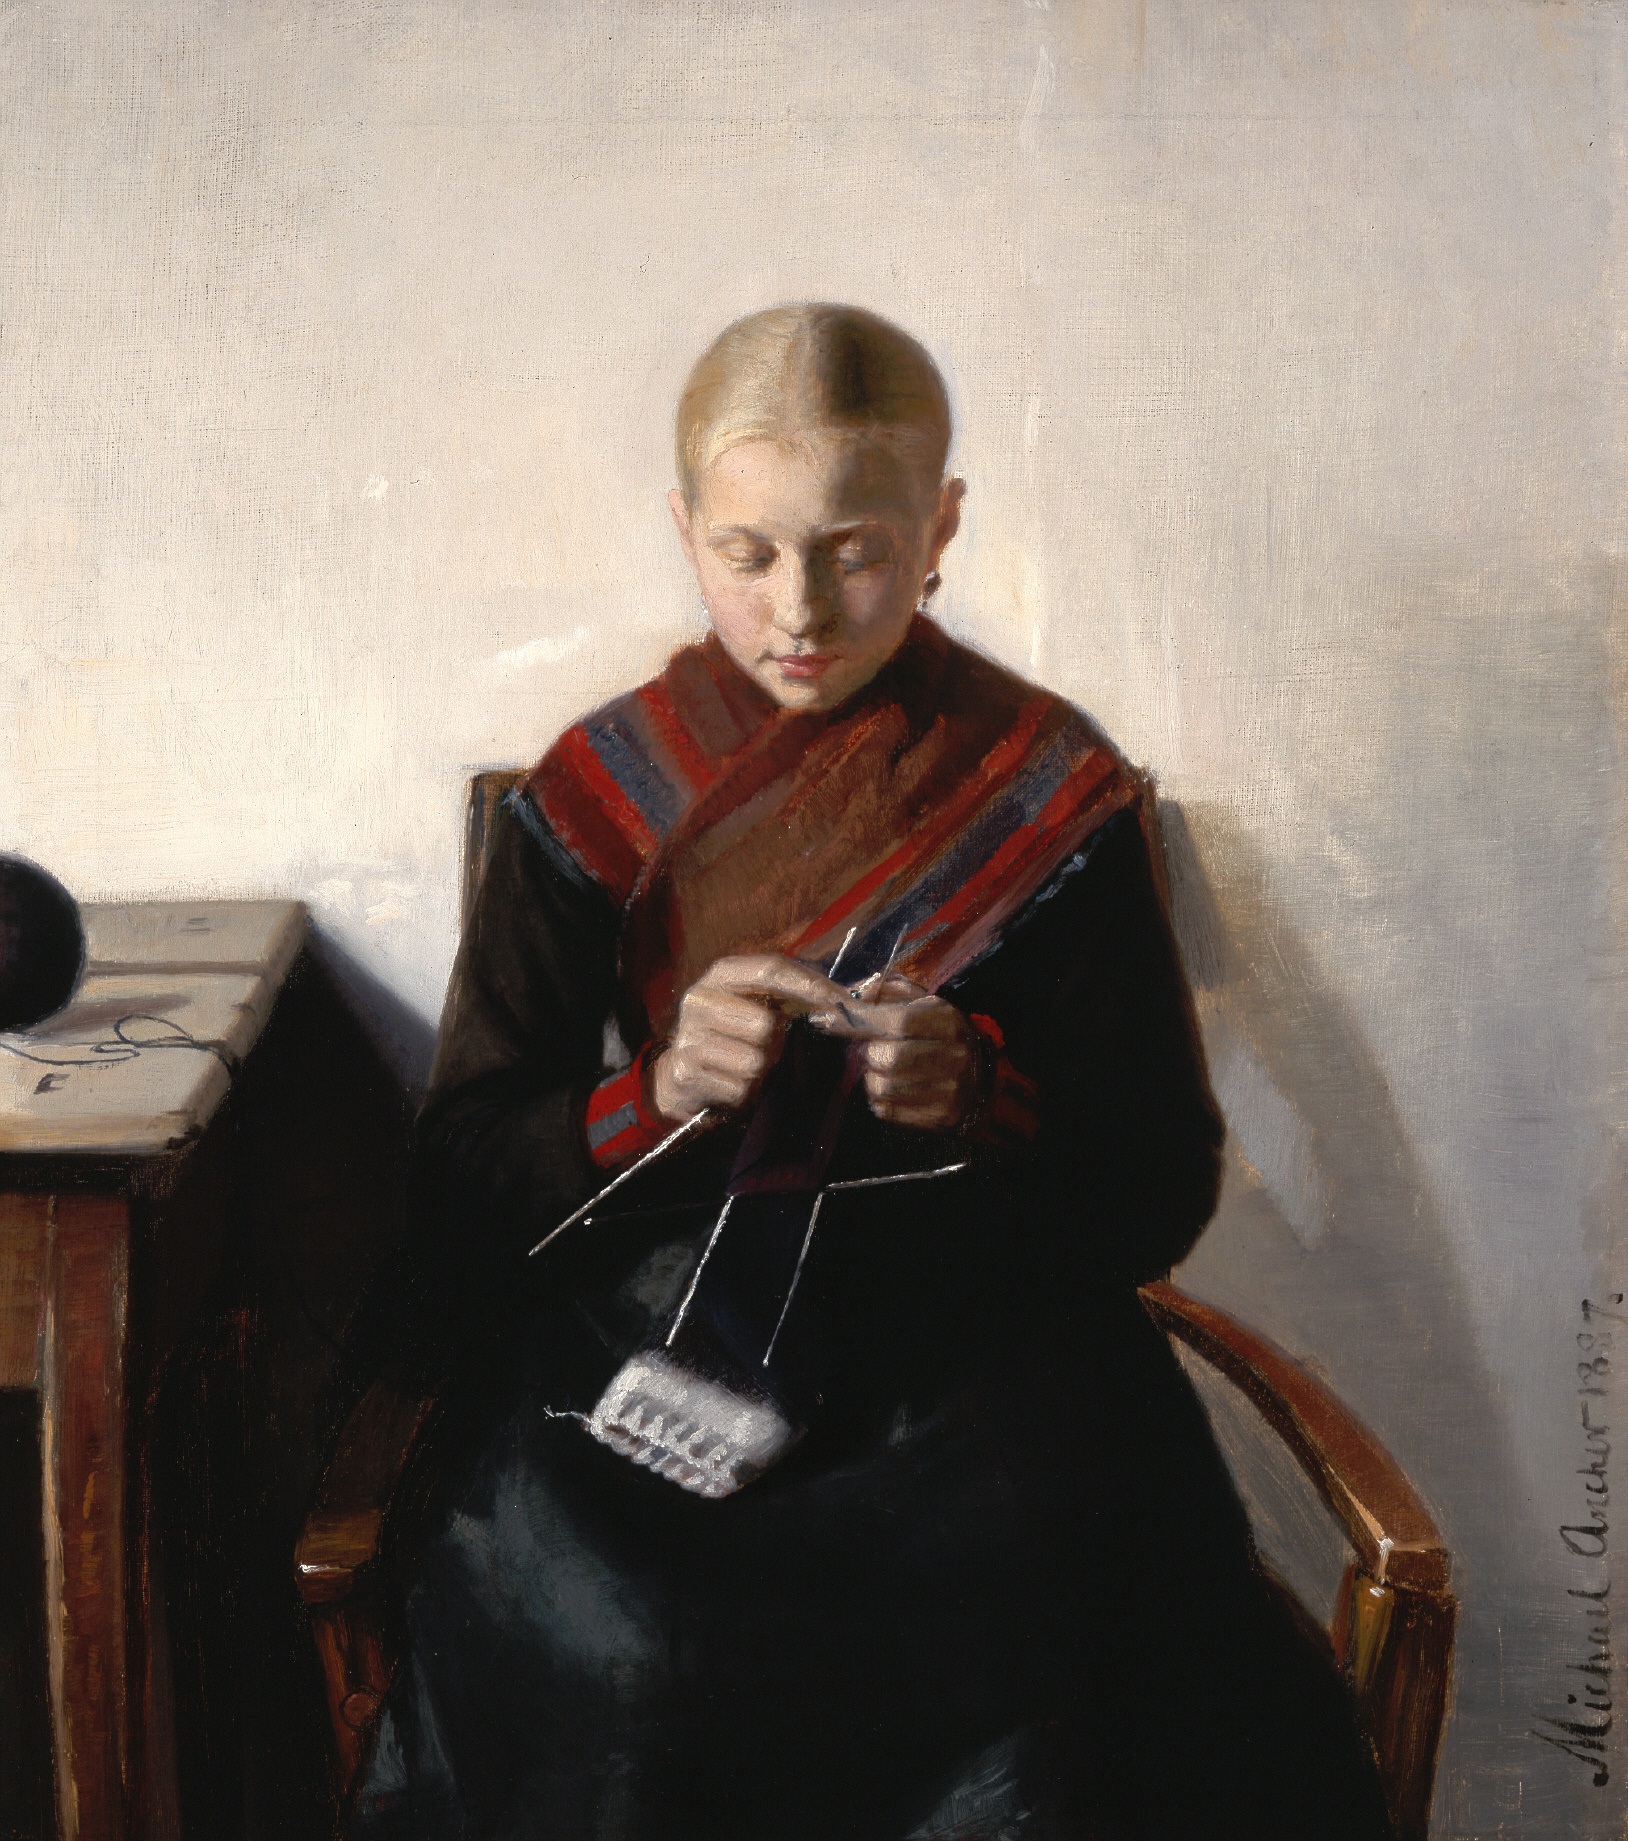 Langt det meste tøj og strik blev fremstillet til eget forbrug. Michael Ancher: Ung fiskerpige der strikker, 1887. Billedet kan ses på Kunstmuseum Brandts.